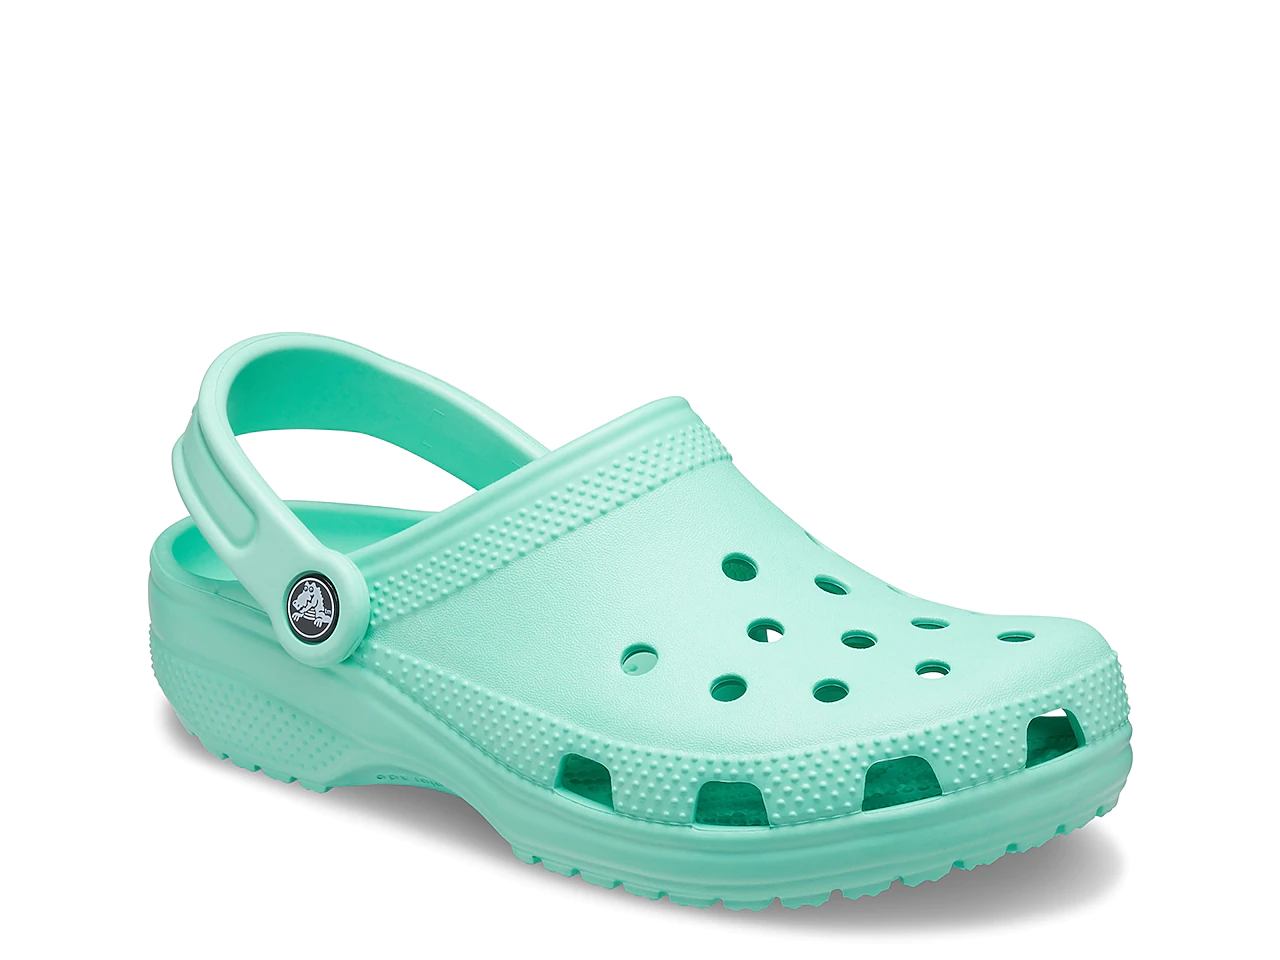 A single green sandal by Crocs